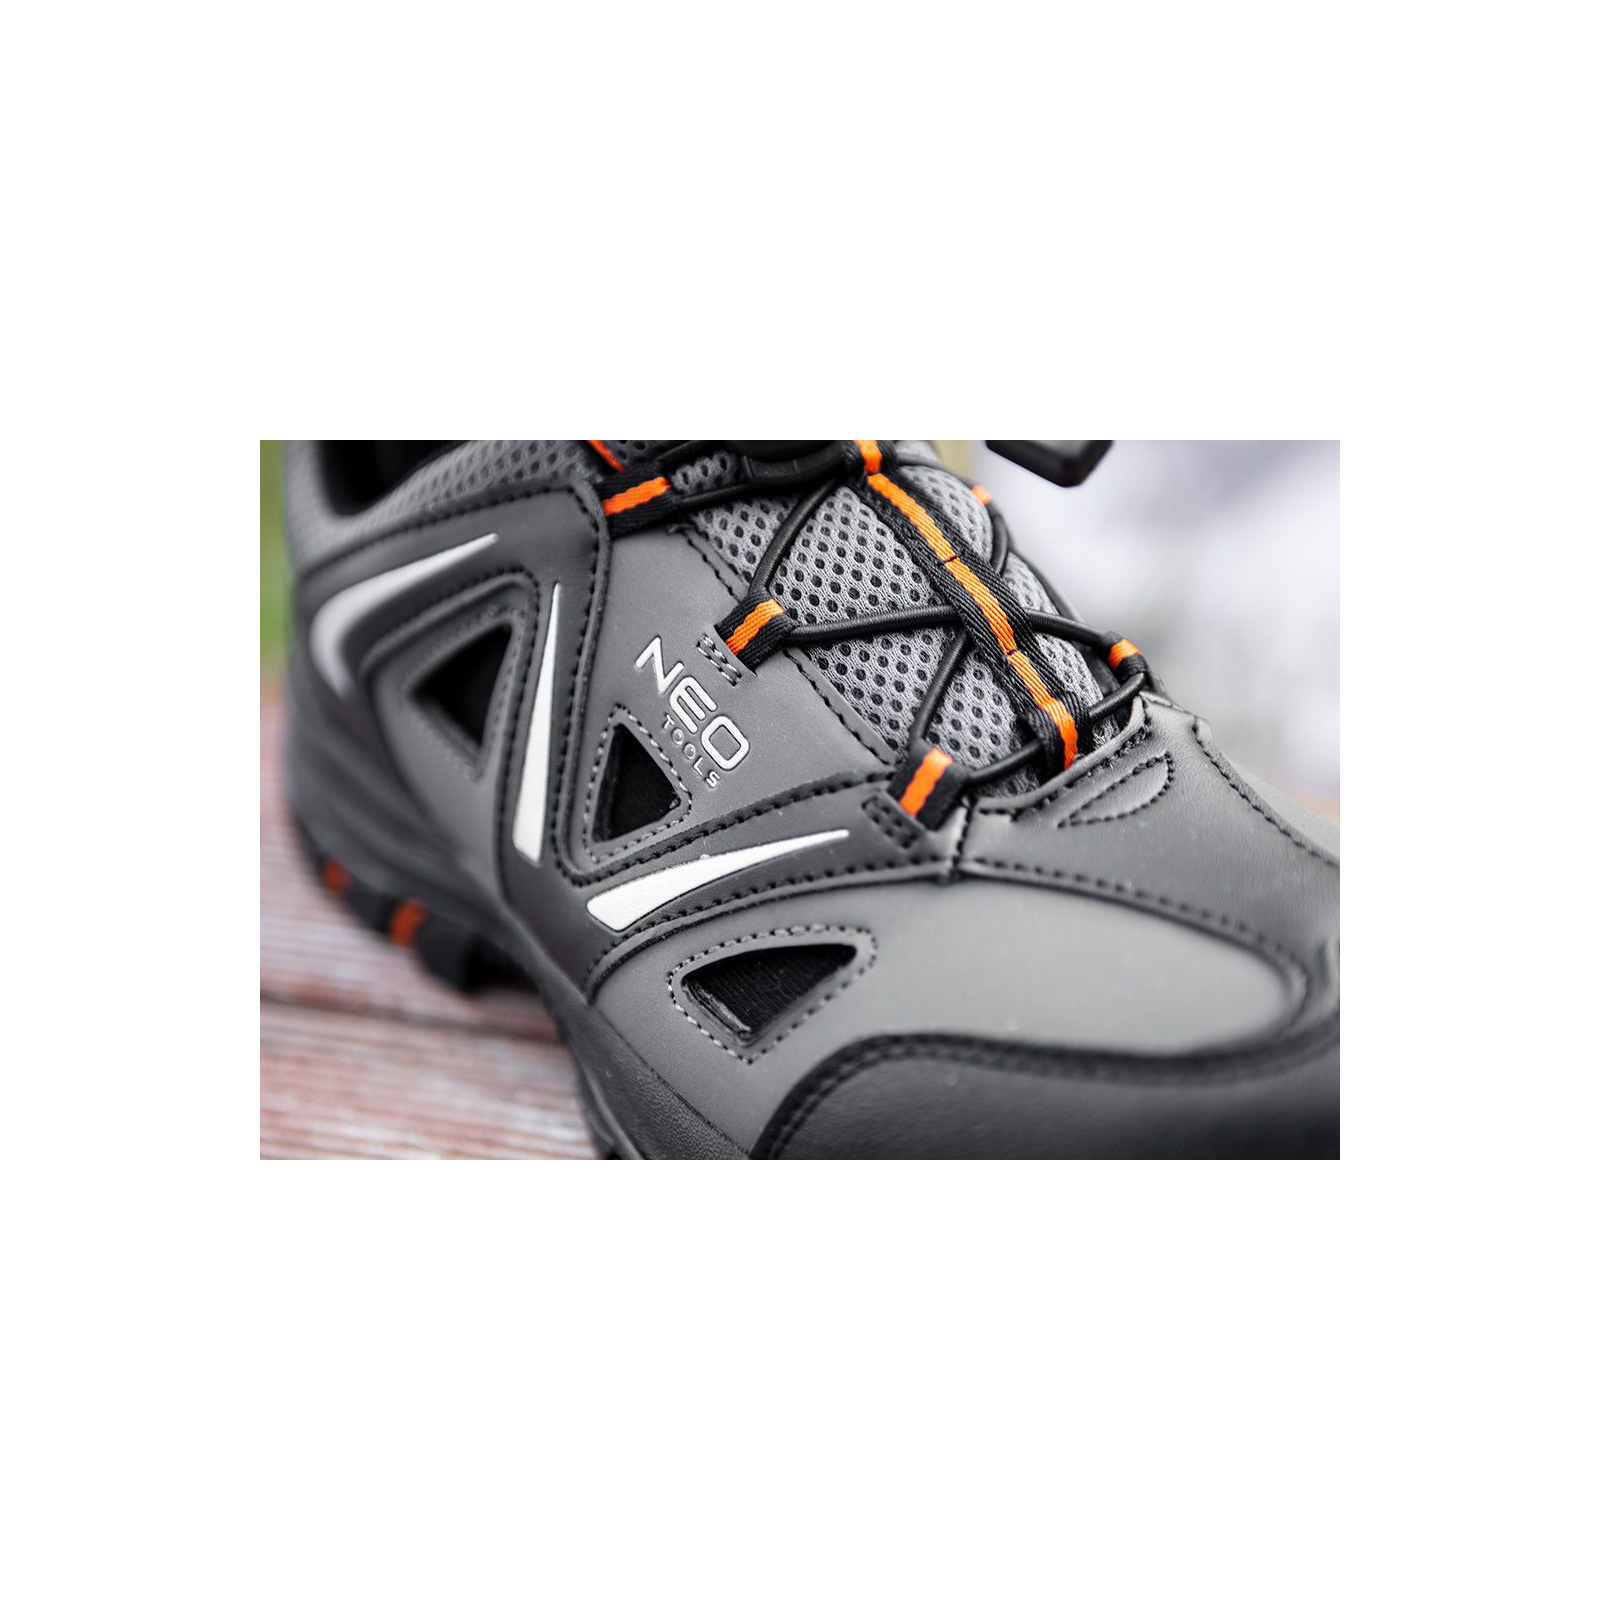 Ботинки рабочие Neo Tools кроссовки дышащие, подошва EVA, класс защиты OB, SRA, р.41 (82-722) изображение 6